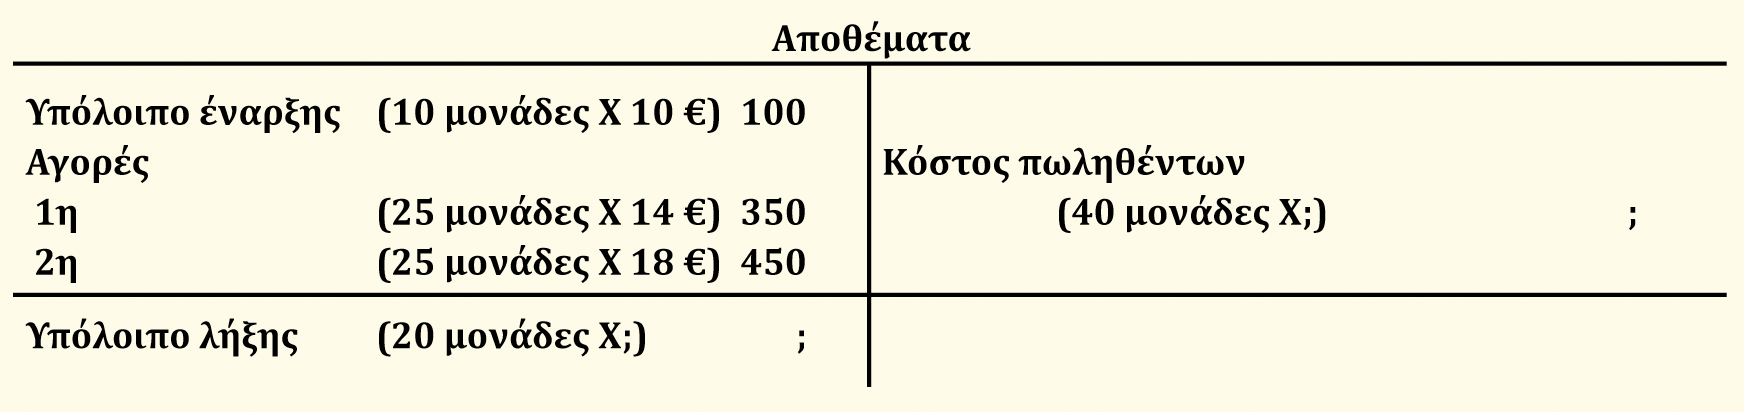 Μέσο κόστος Πίνακας 6-6 Κόστος διαθέσιμων προϊόντων 900 Μέσο κόστος ανά μονάδα= = = 15 Αριθμός διαθέσιμων μονάδων 60 Πωληθείσες μονάδες X Μέσο κόστος